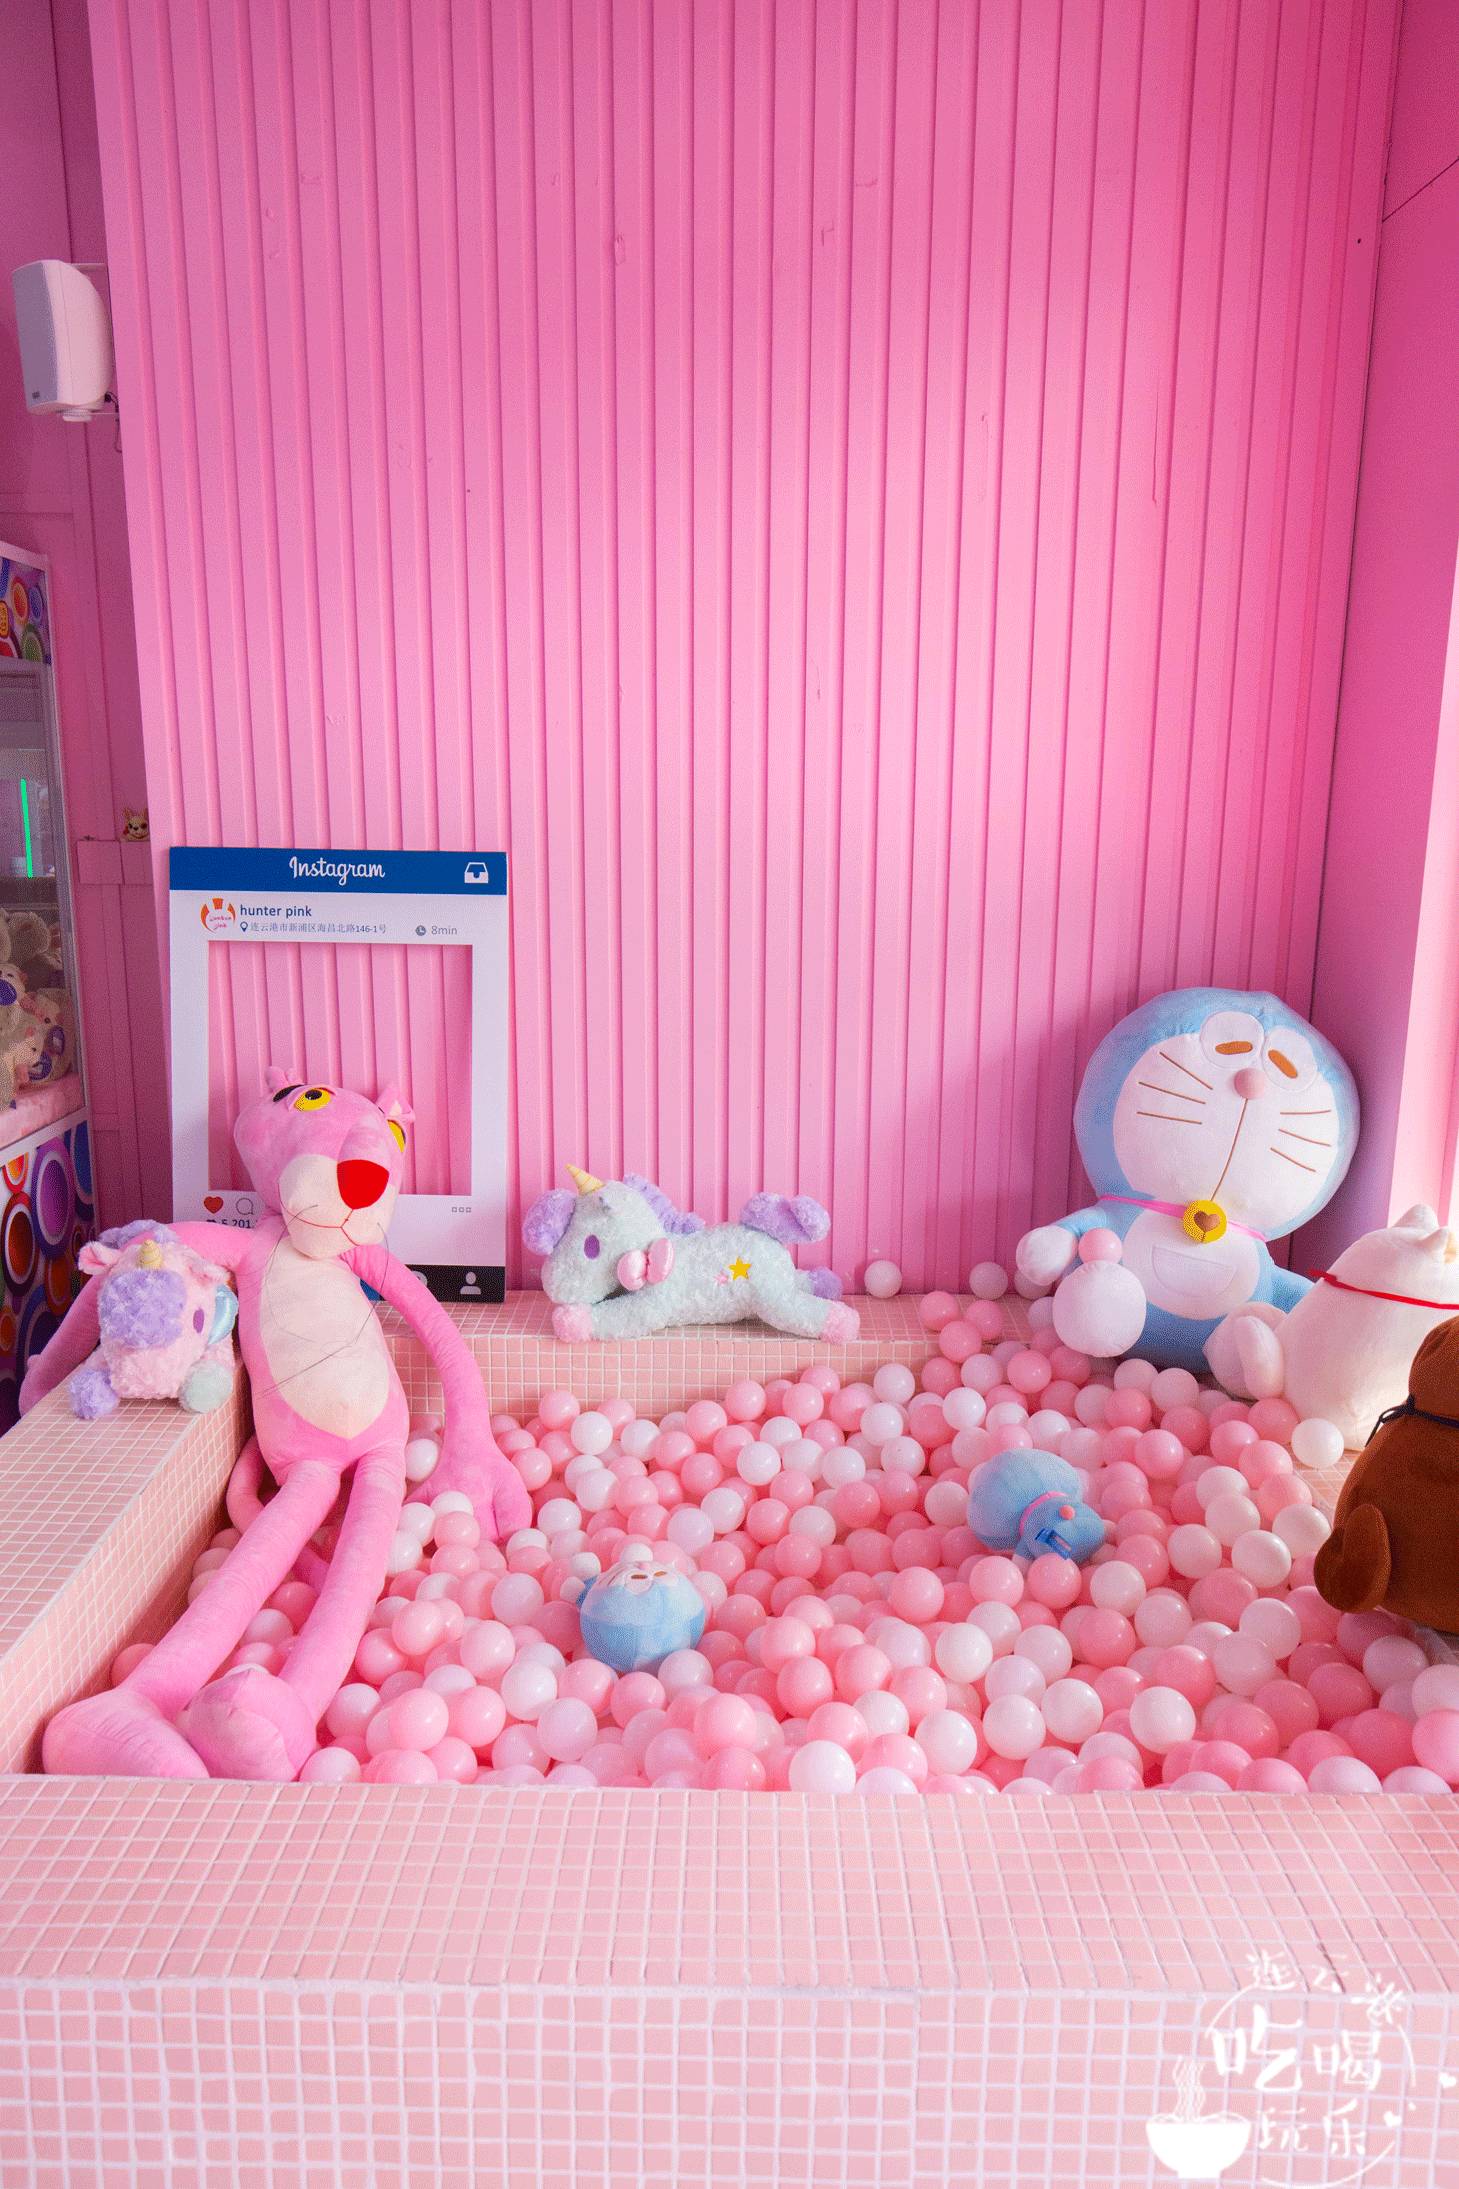 连云港首家粉色网红娃娃机店来了!还能夹到dior,chanel,ysl